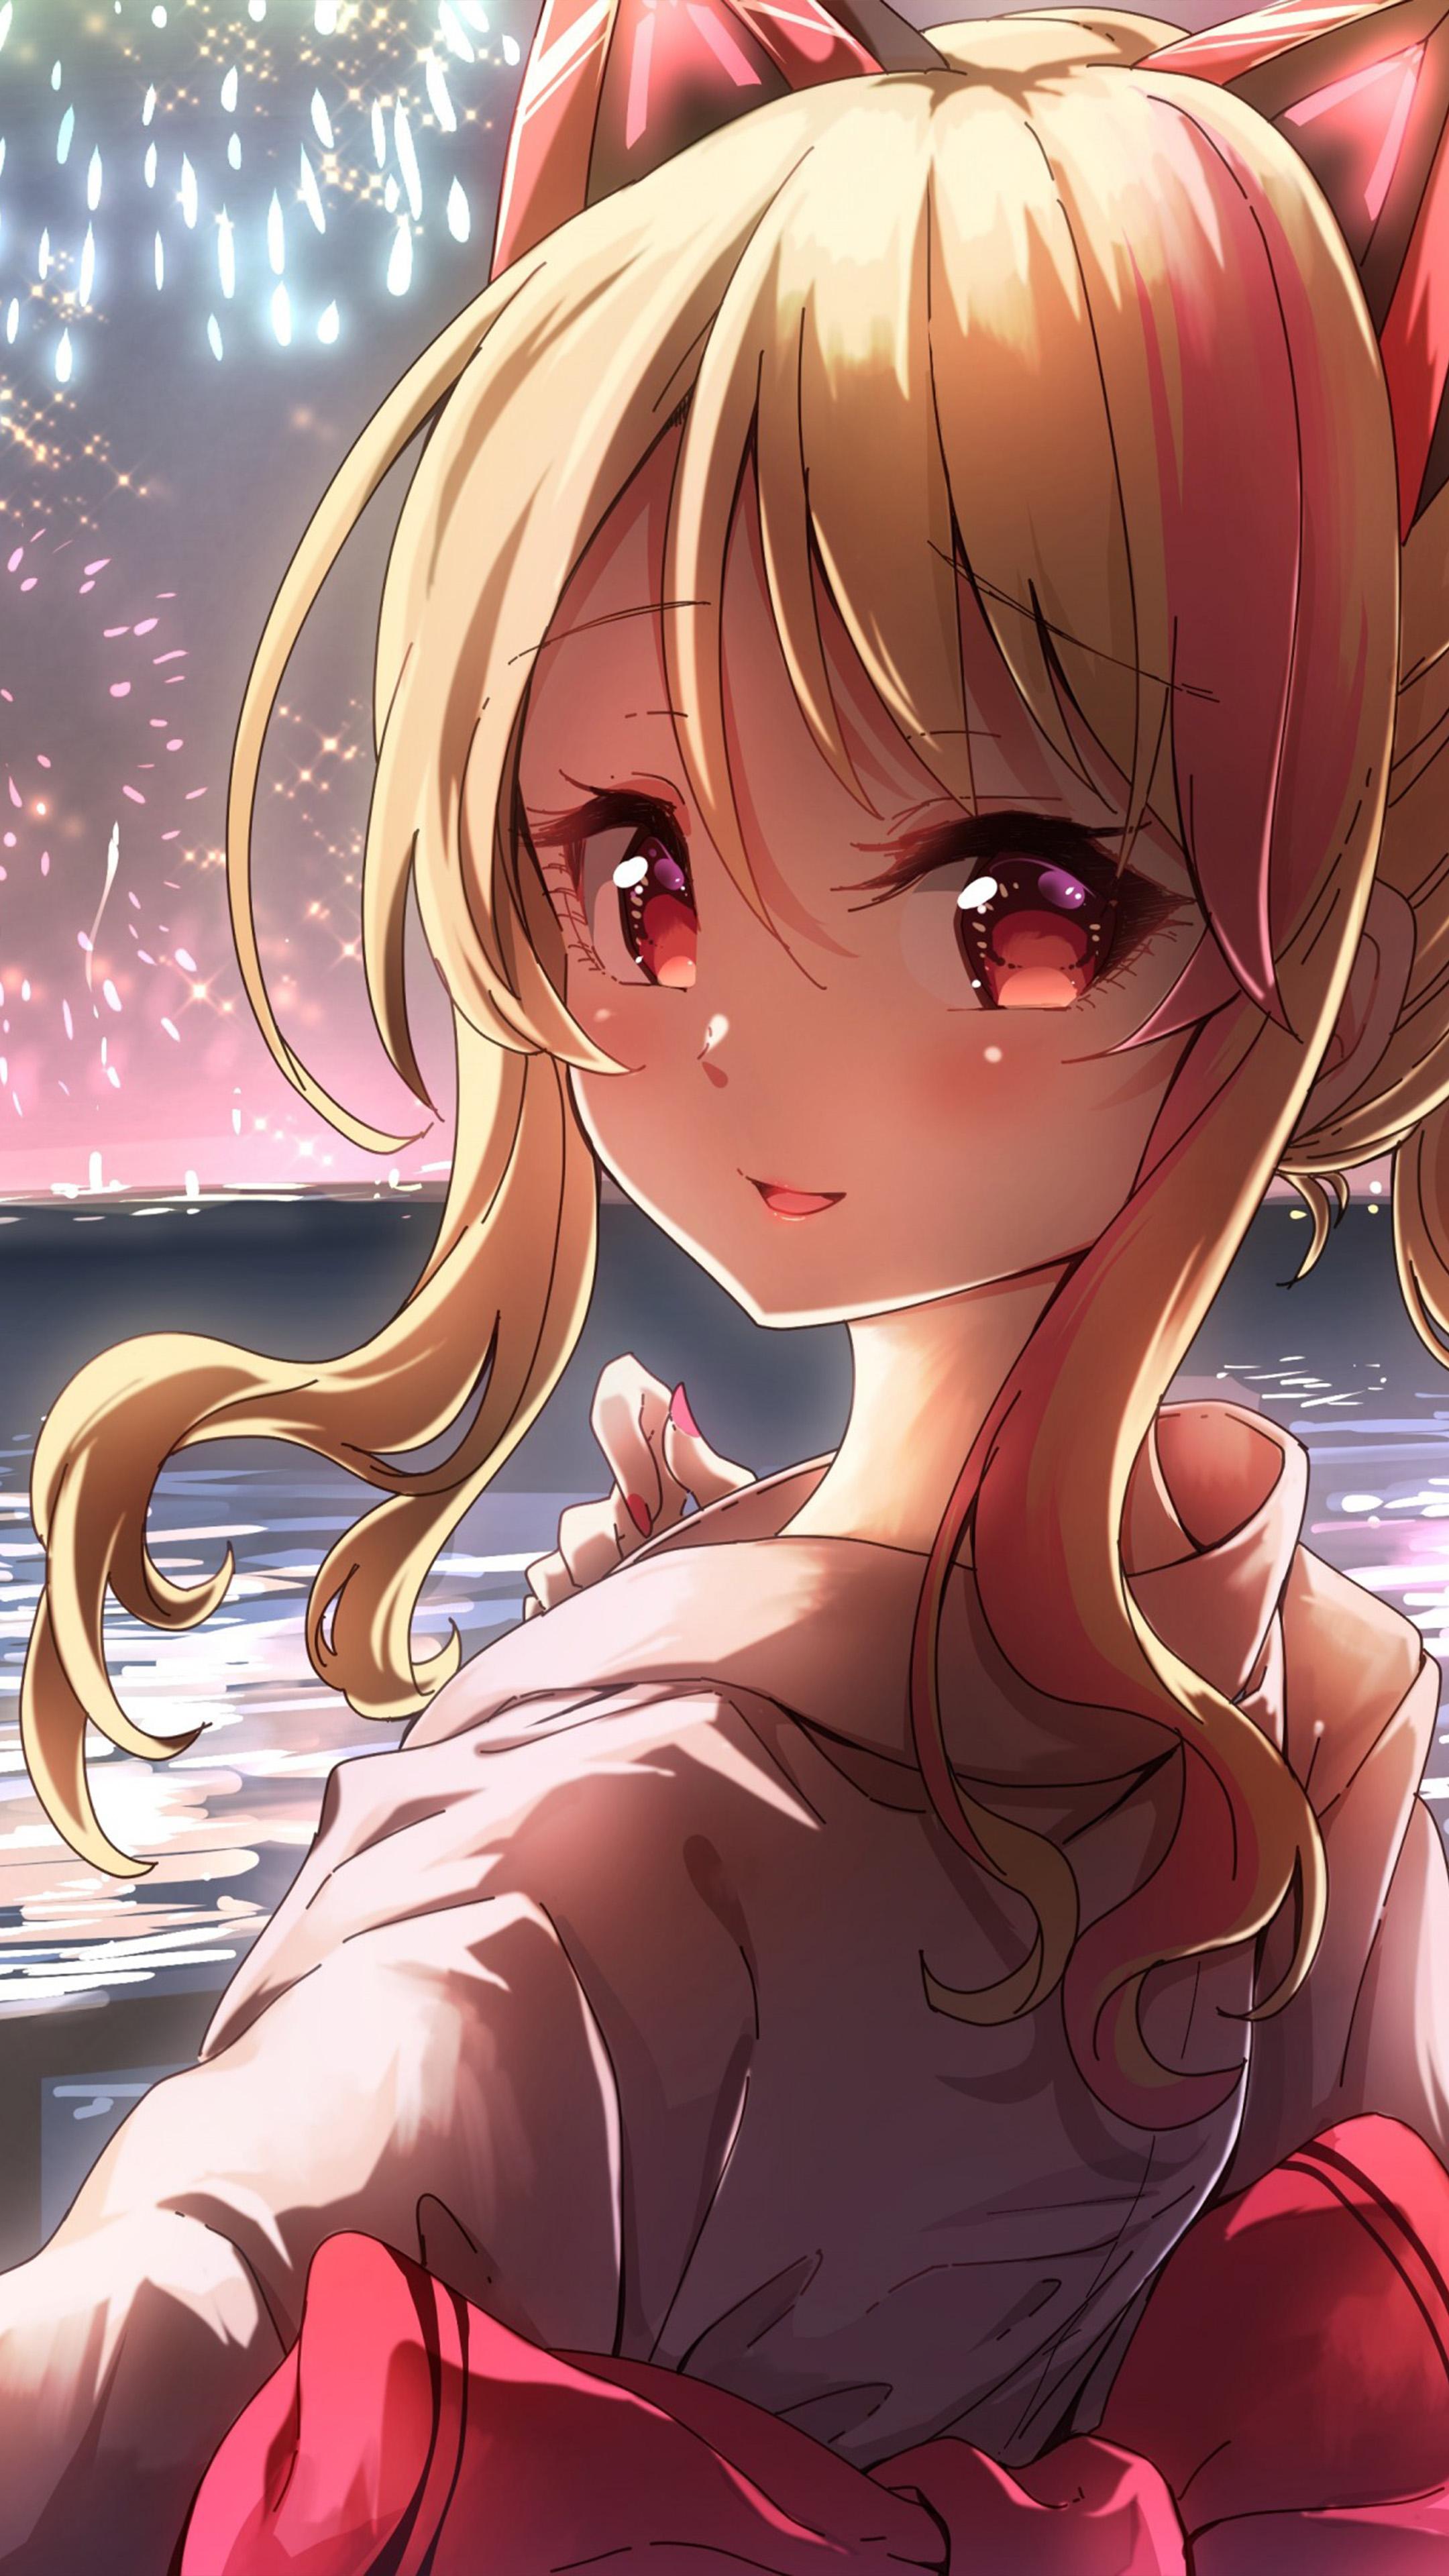 2160 x 3840 · jpeg - Anime Girl Fireworks 4K Ultra HD Mobile Wallpaper